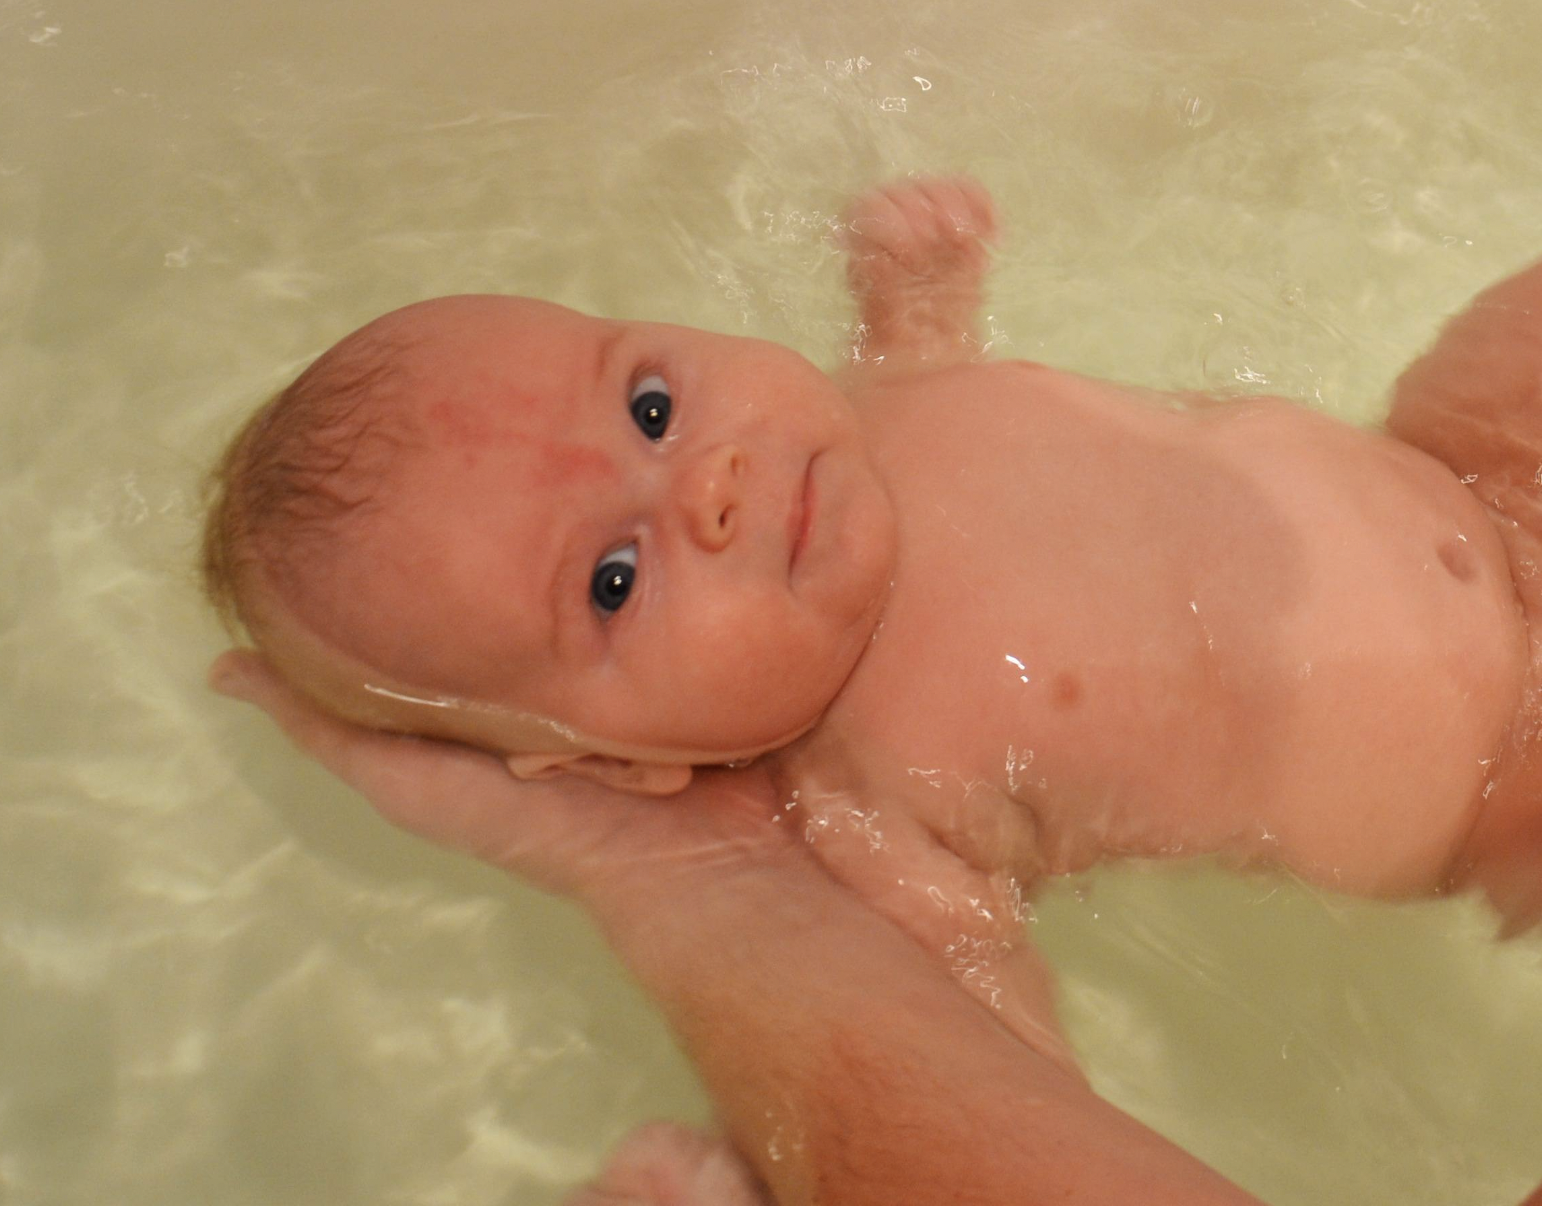 Das Baby wird in einer Badewanne gebadet | Quelle: Shutterstock